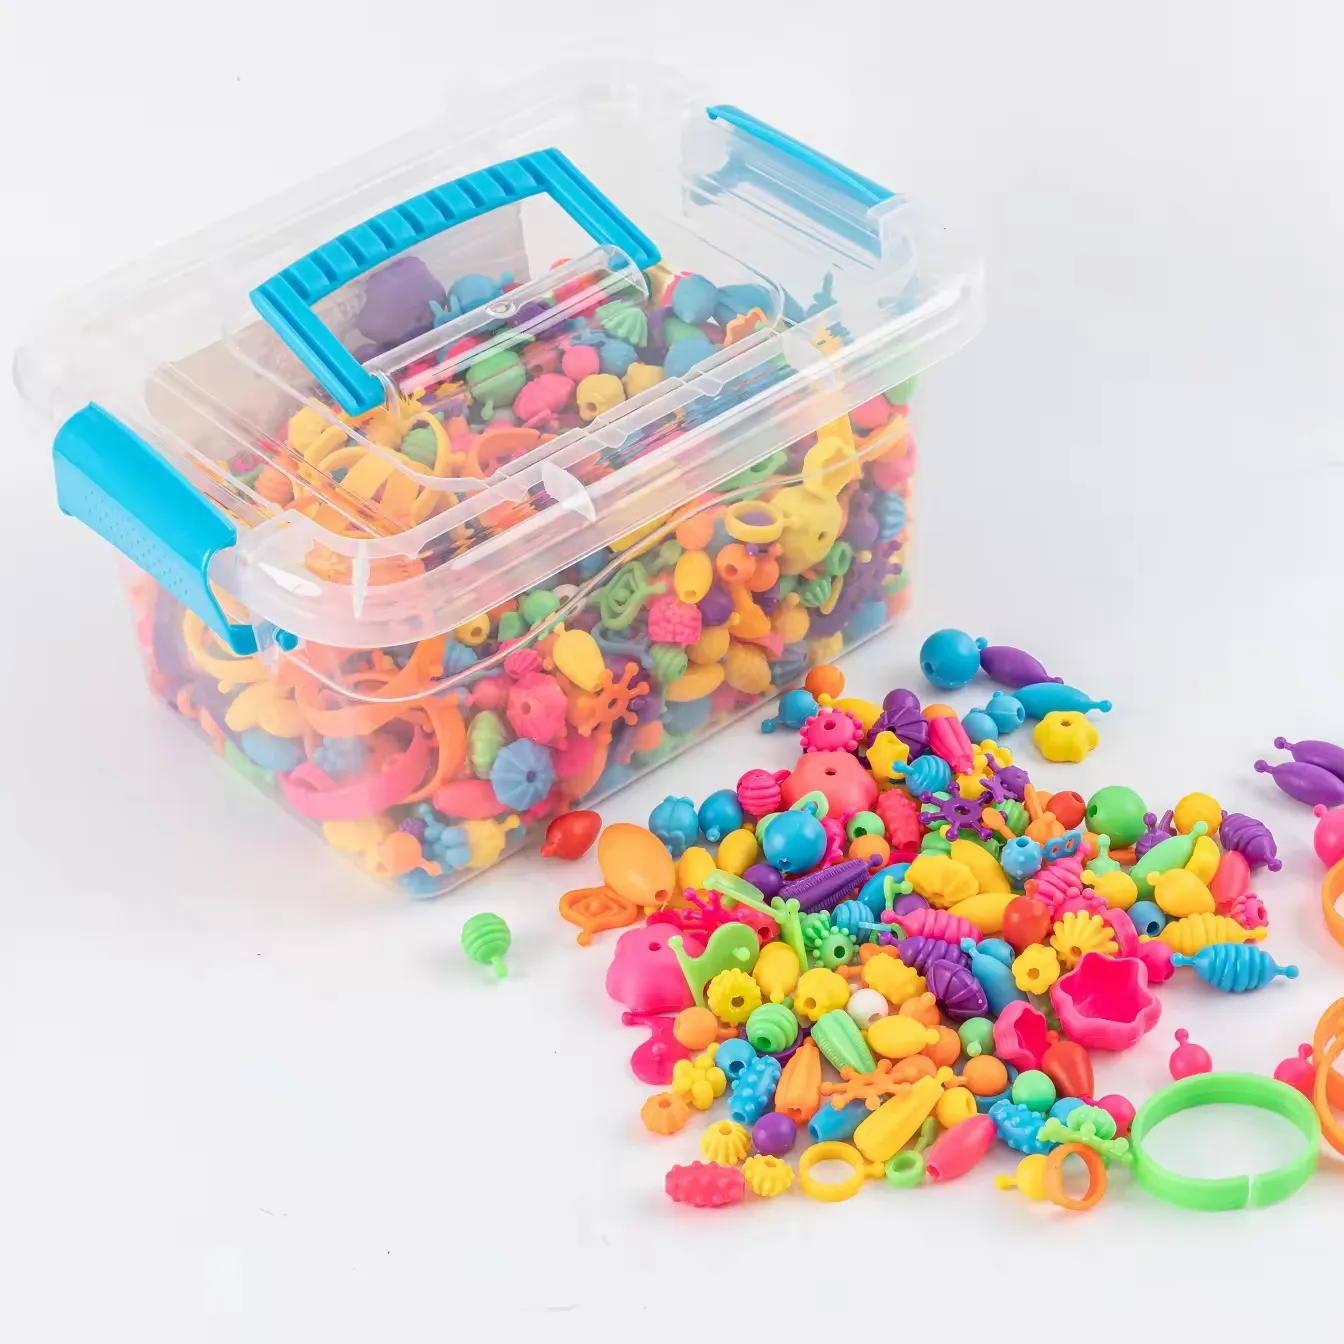 1000 + Snap Pop hạt, hạt đối với trang sức làm kit, nghệ thuật và hàng thủ công nguồn cung cấp, đồ chơi cho trẻ em gái, trẻ em giáo dục đồ chơi thủ công mỹ nghệ